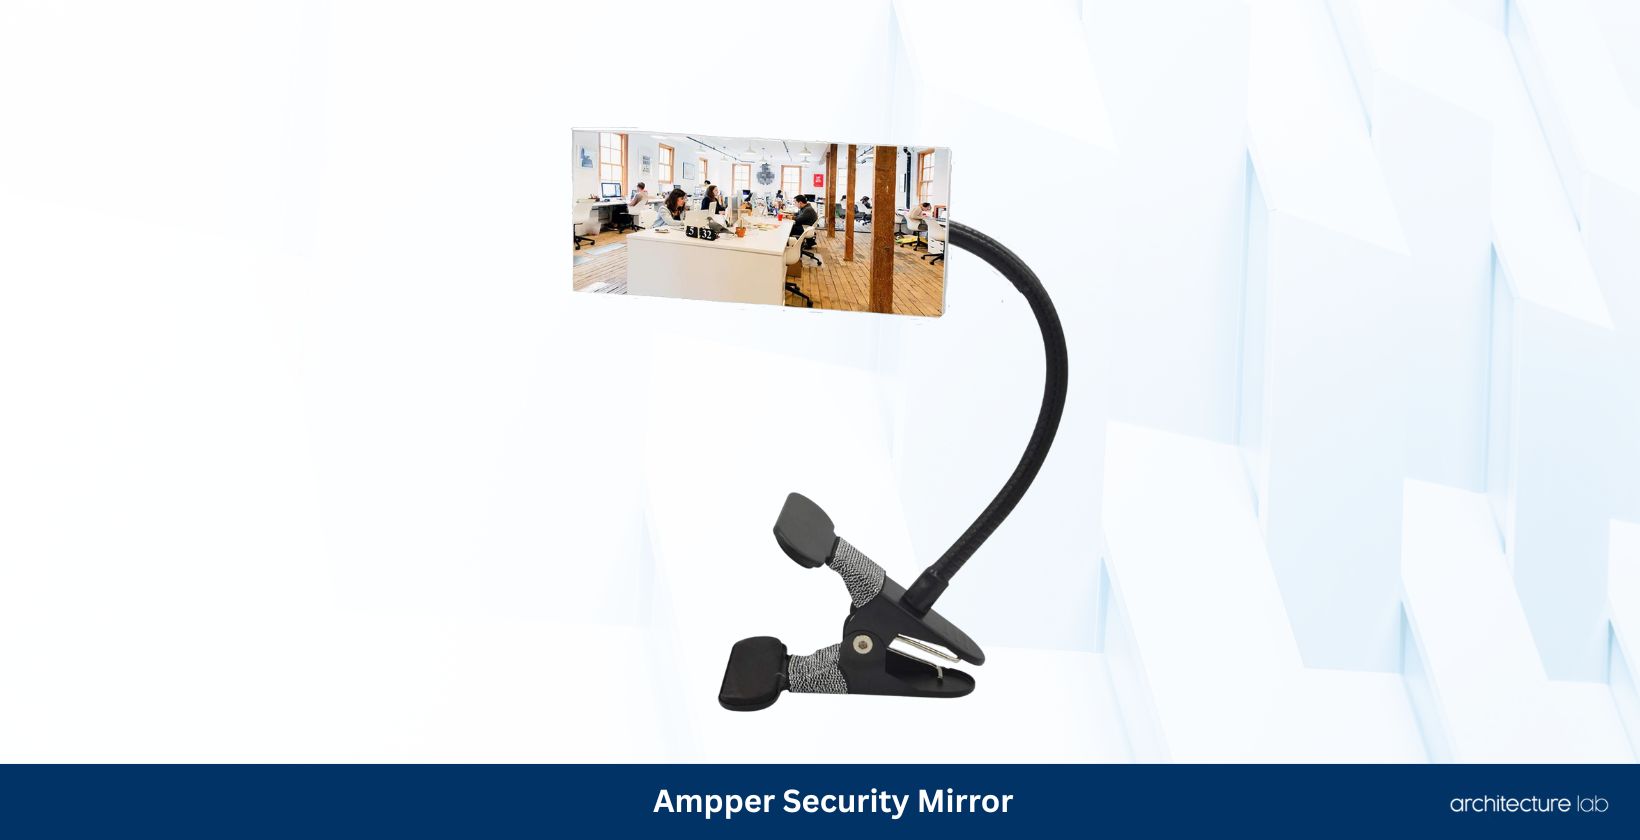 Ampper security mirror